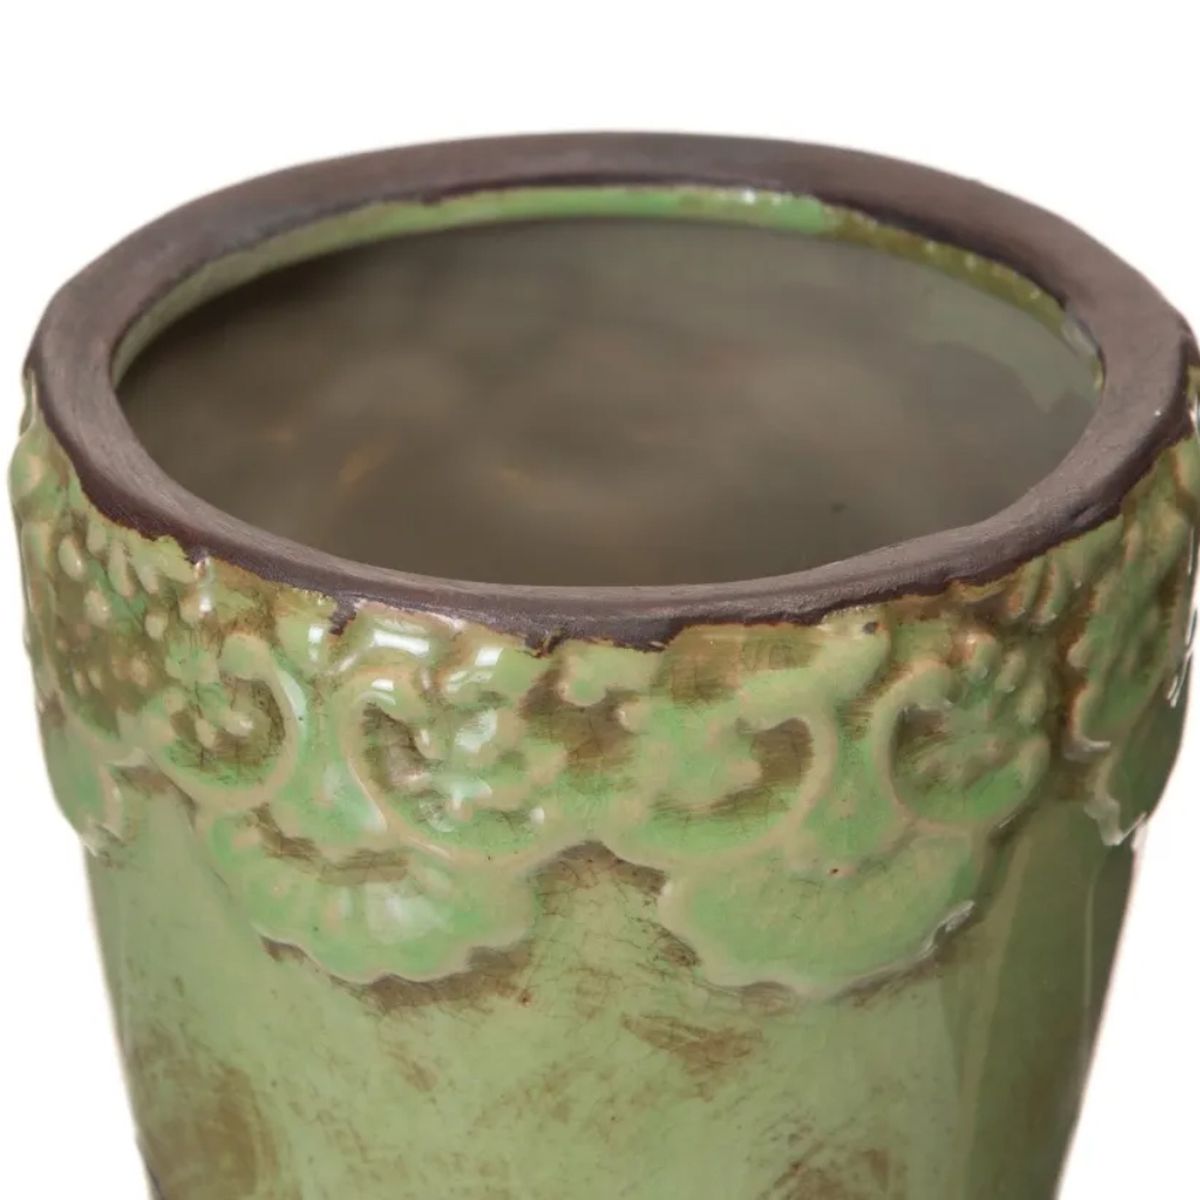 Cache-pot vert en cramique vieillie